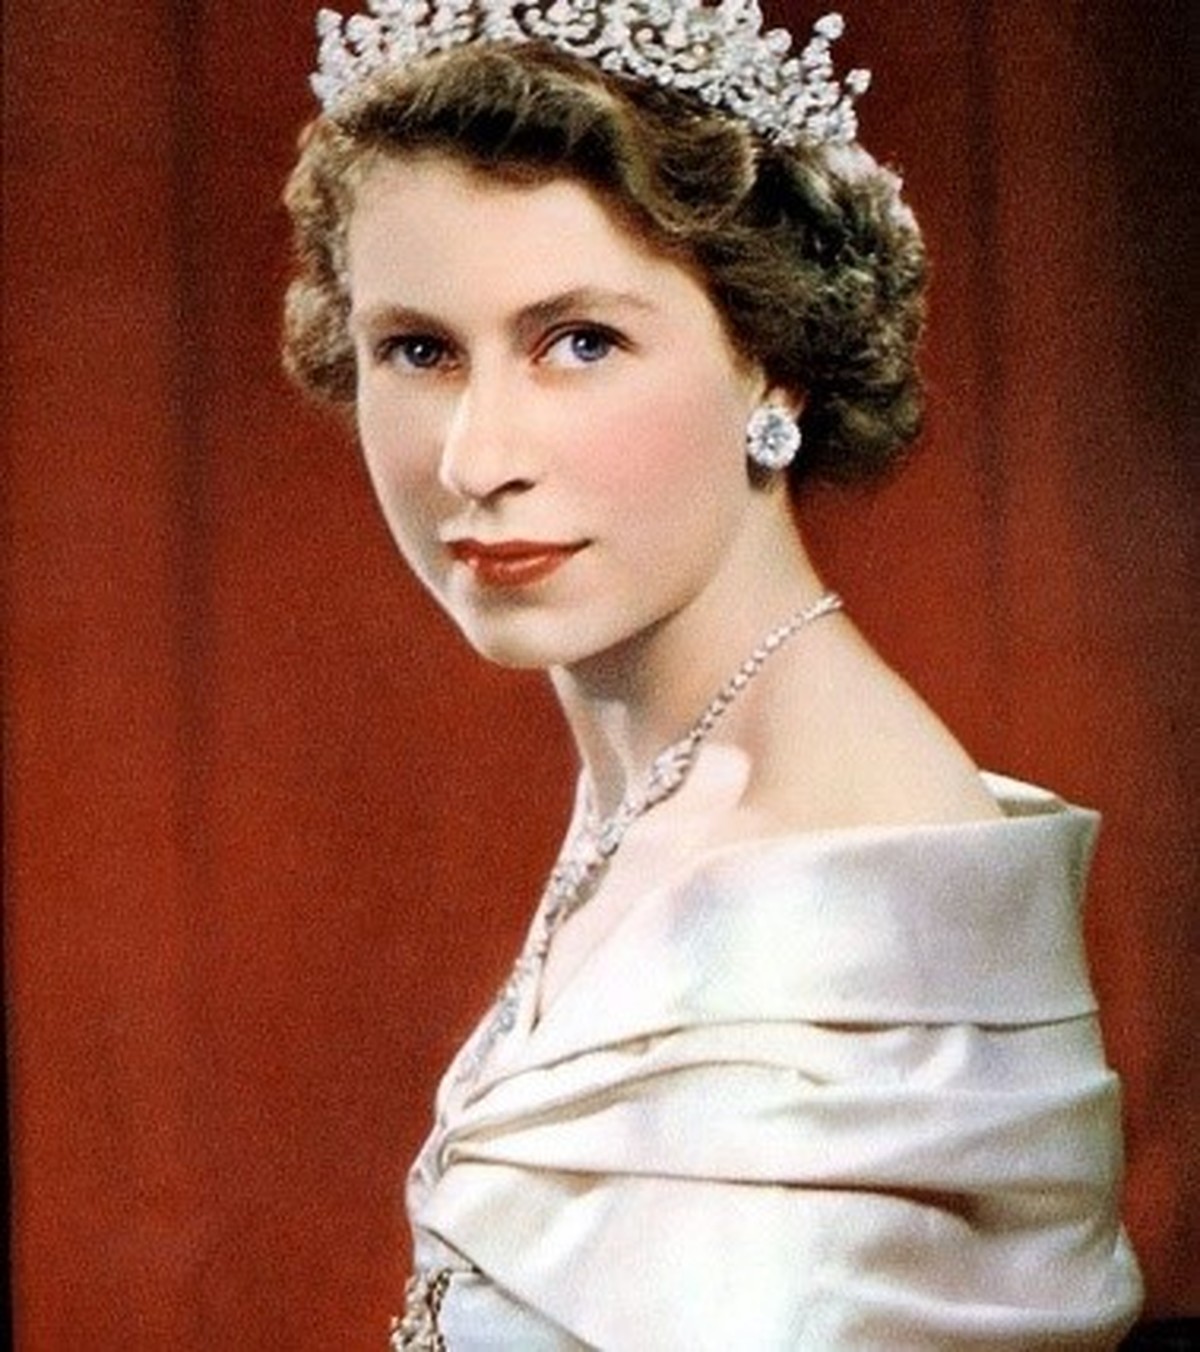 La reine Elizabeth décède à l’âge de 96 ans, laissant une marque sur son héritage |  Enregistrez facilement des marques et des brevets